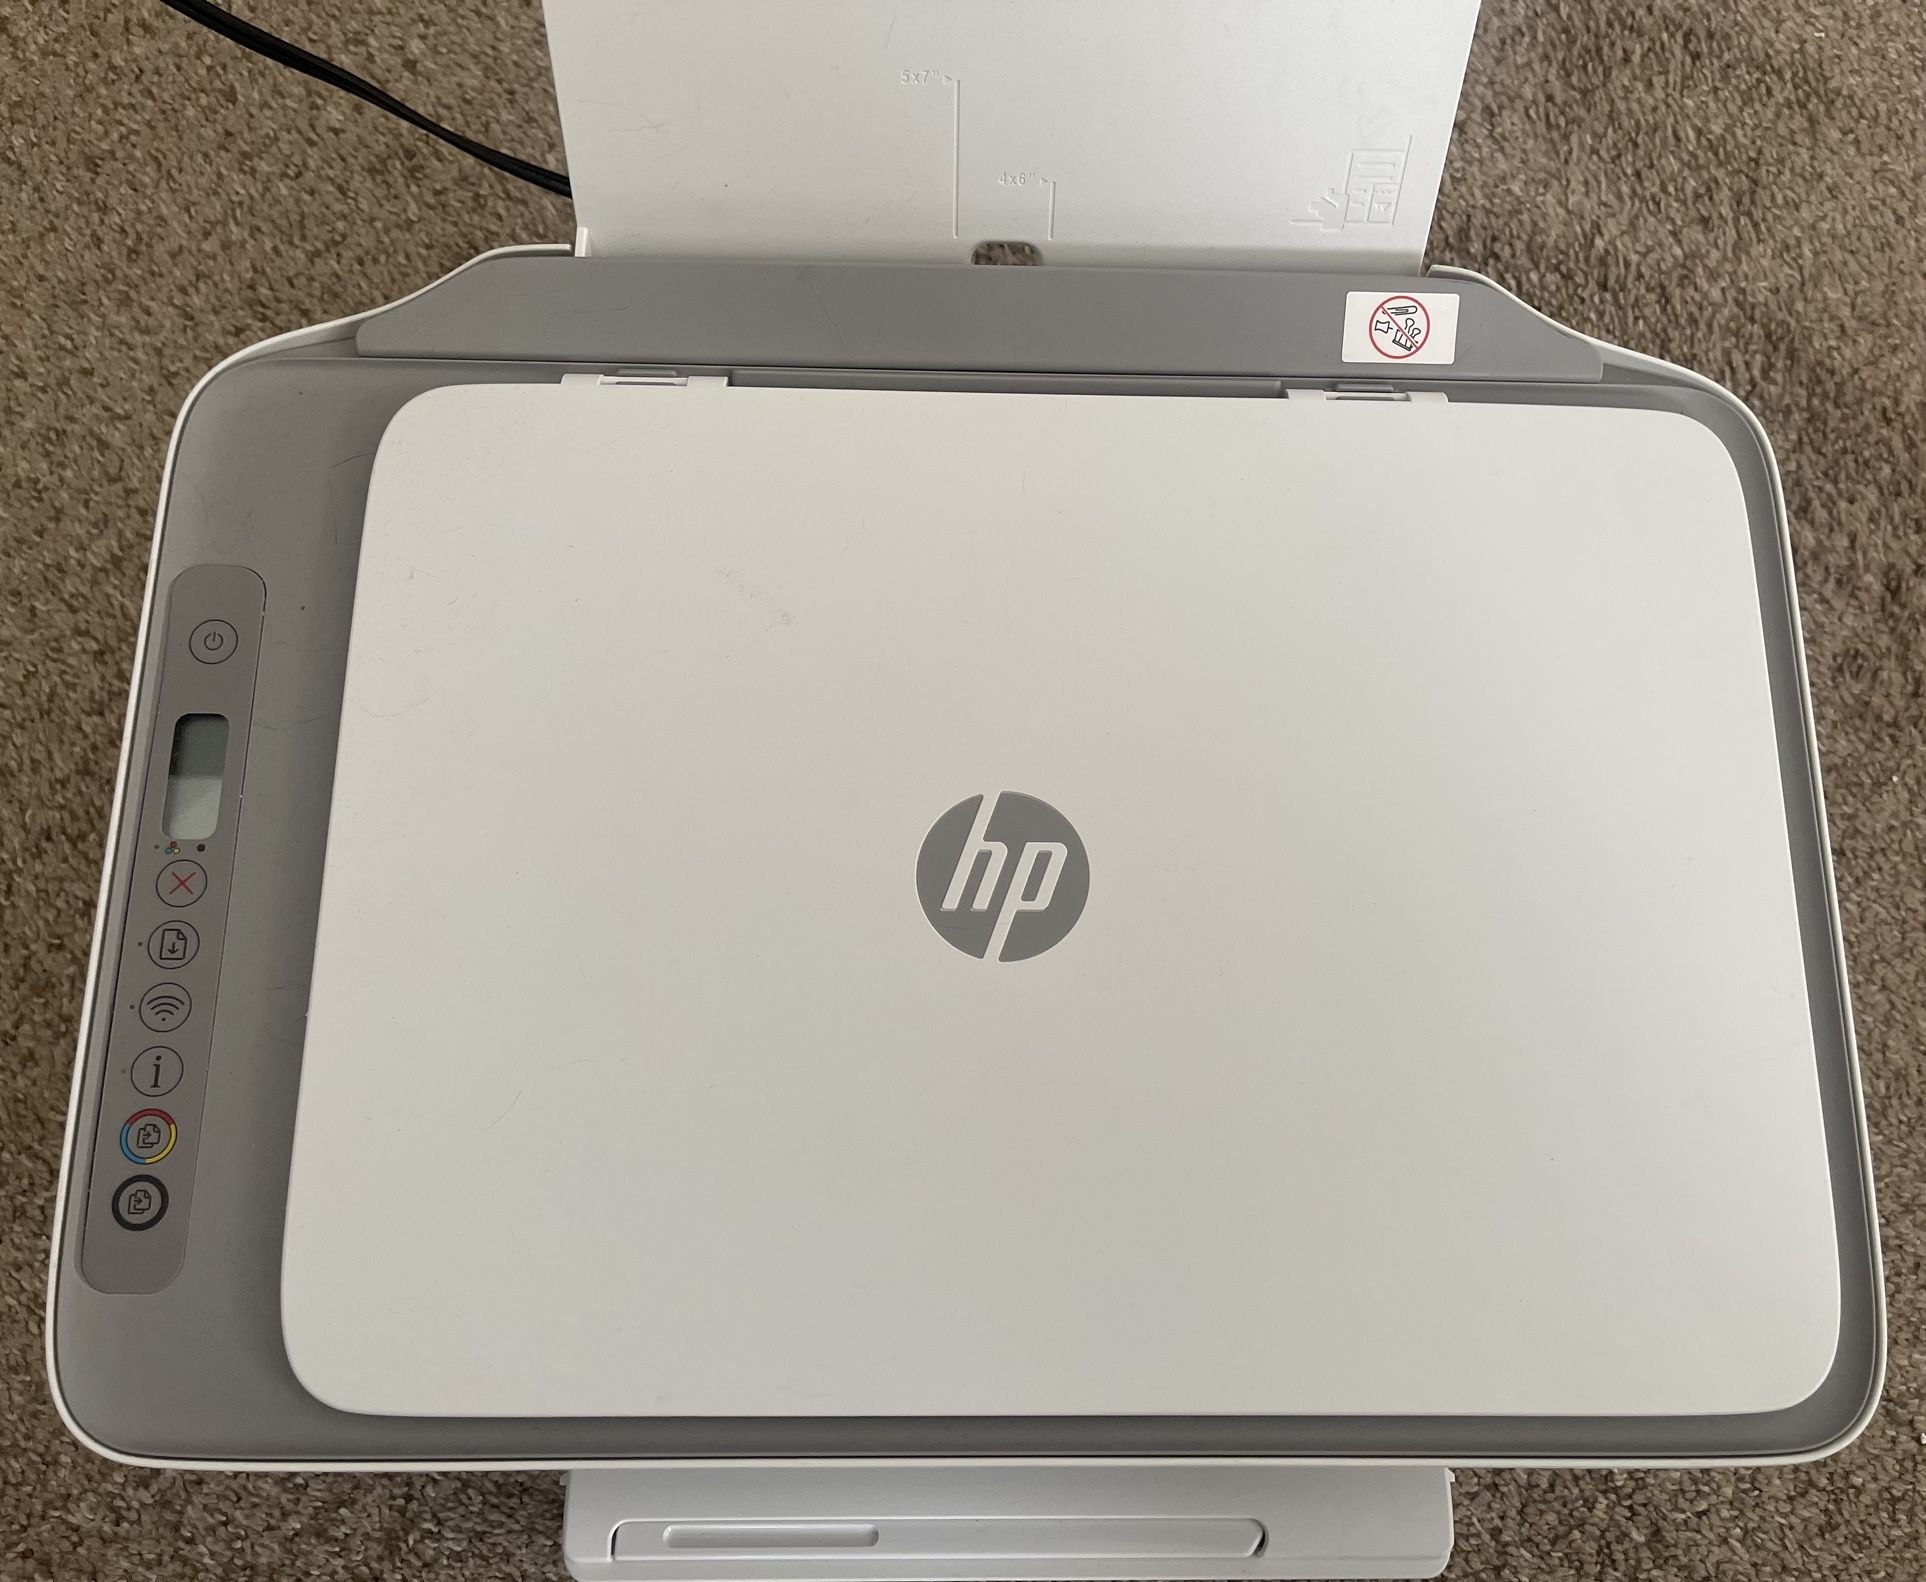 HP WiFi Printer - Black Ink Cartridge Included 